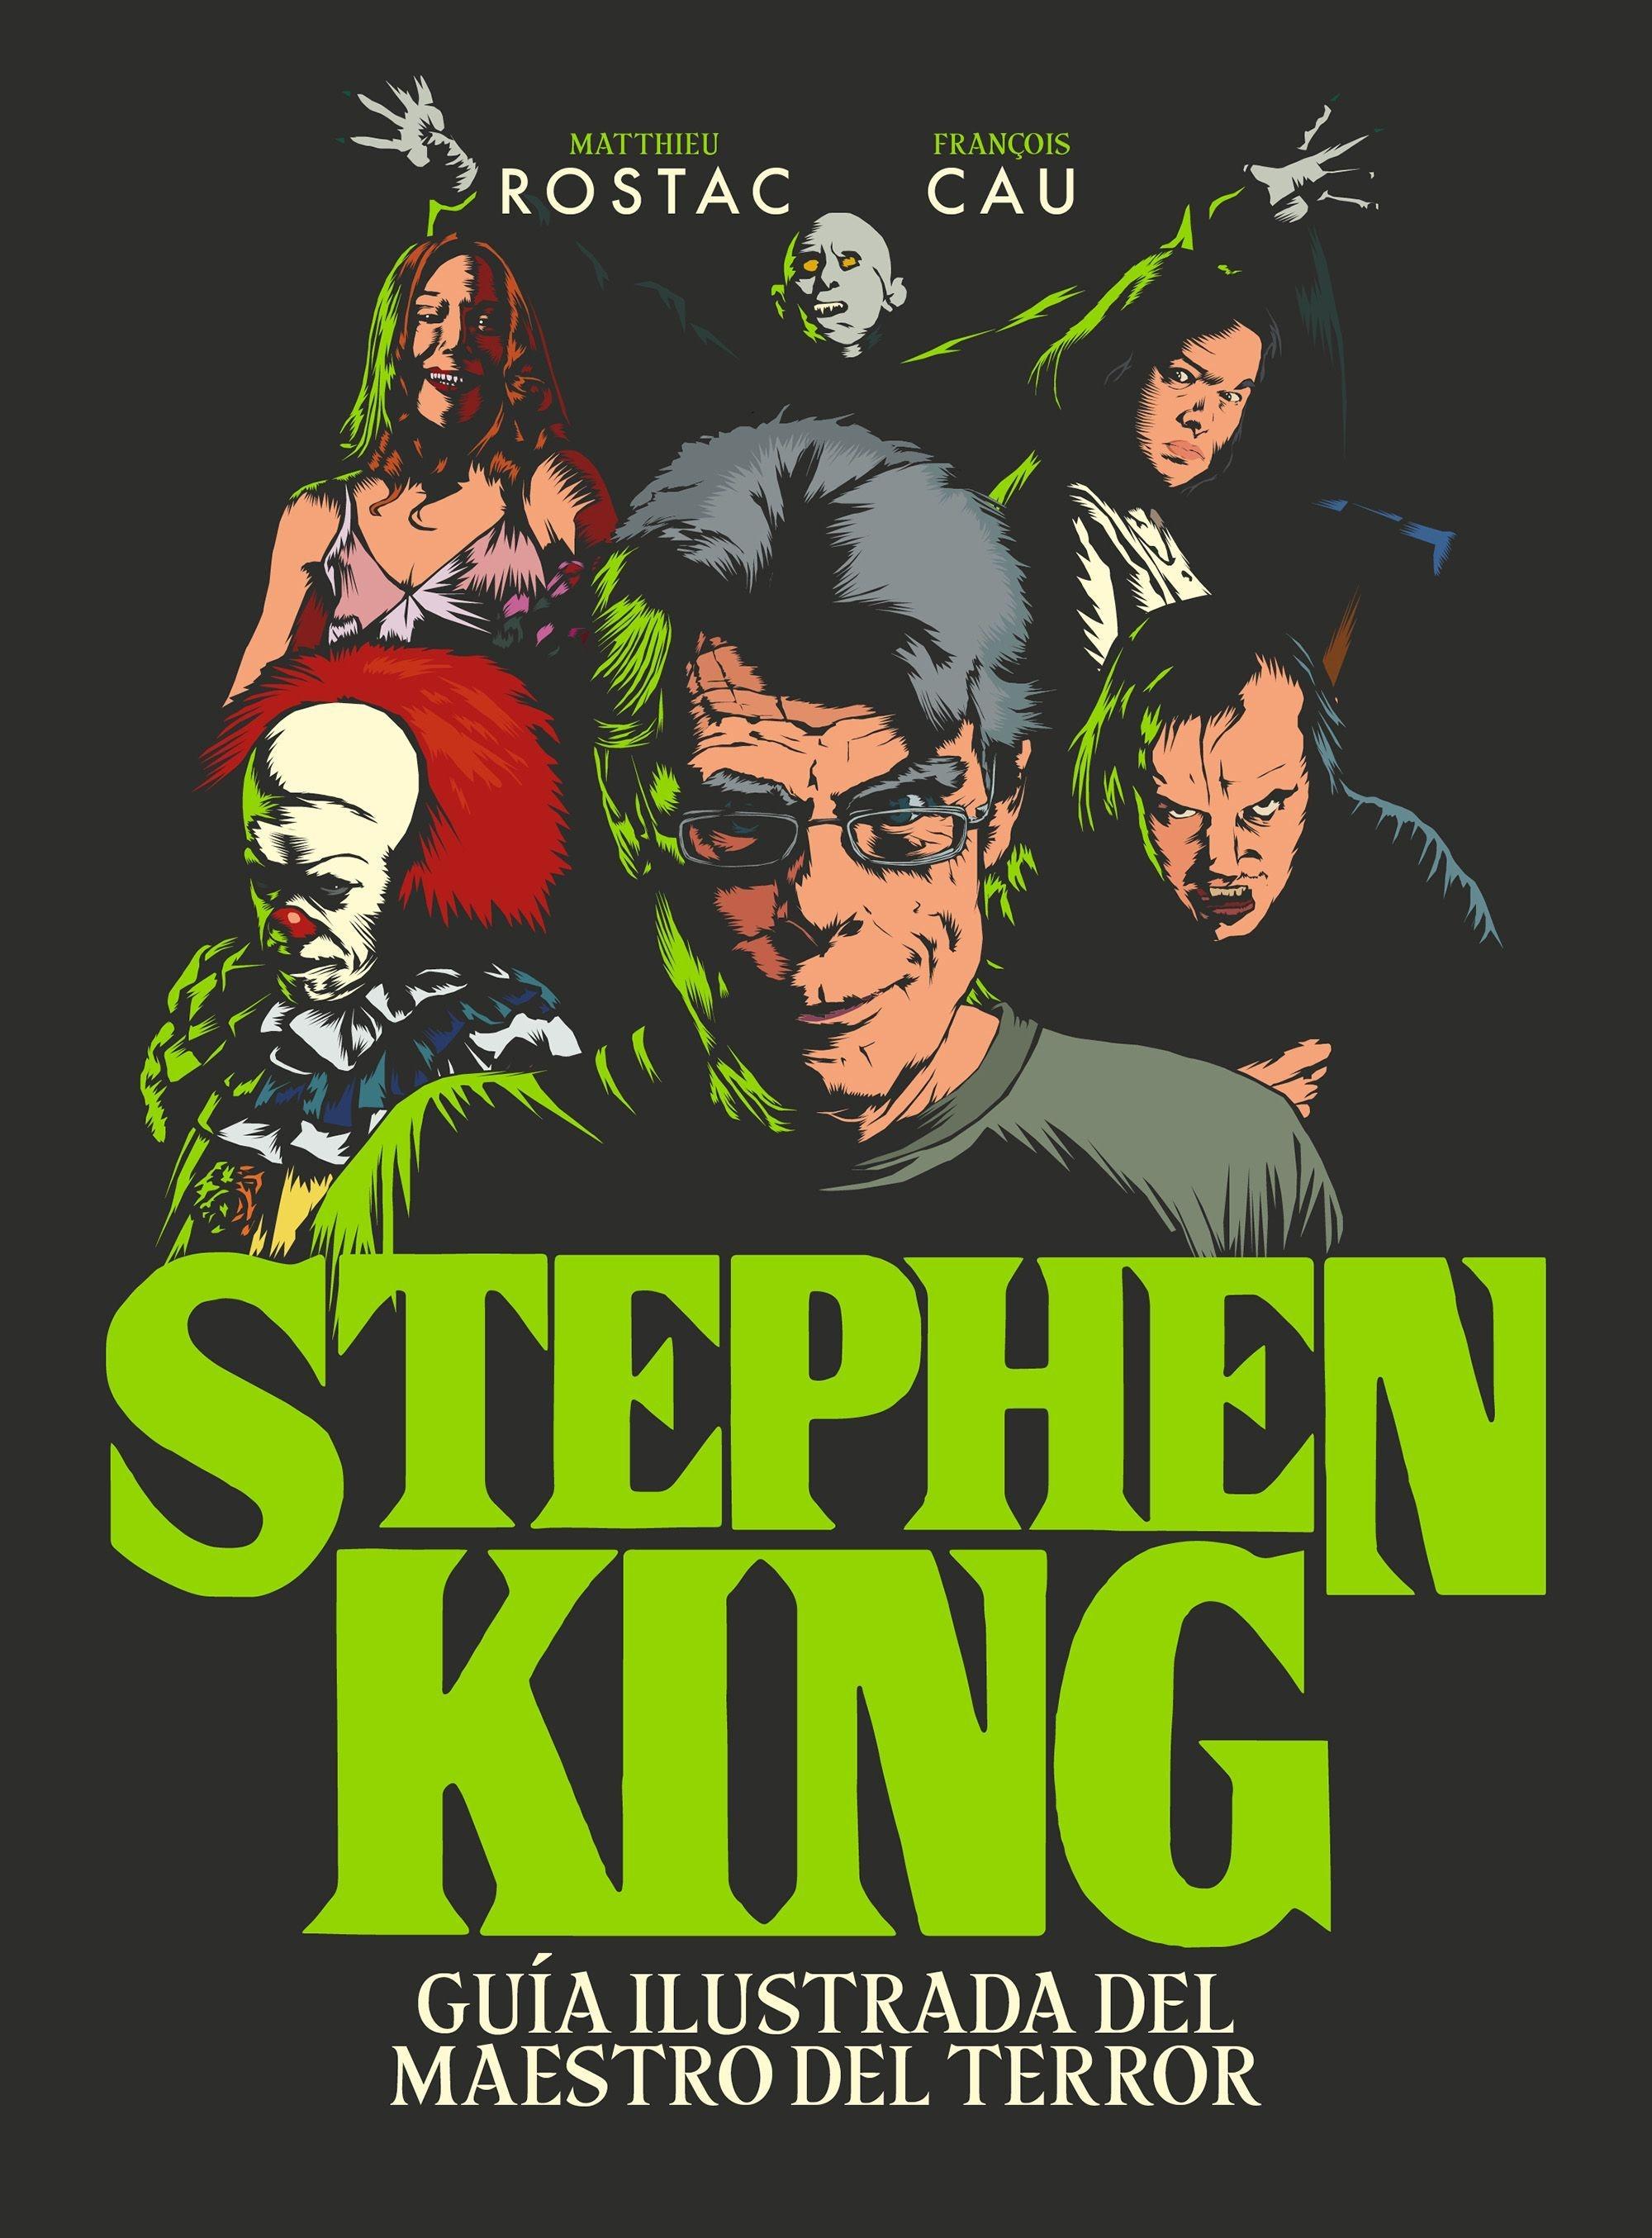 Stephen King "Guía Ilustrada del Maestro del Terror". 